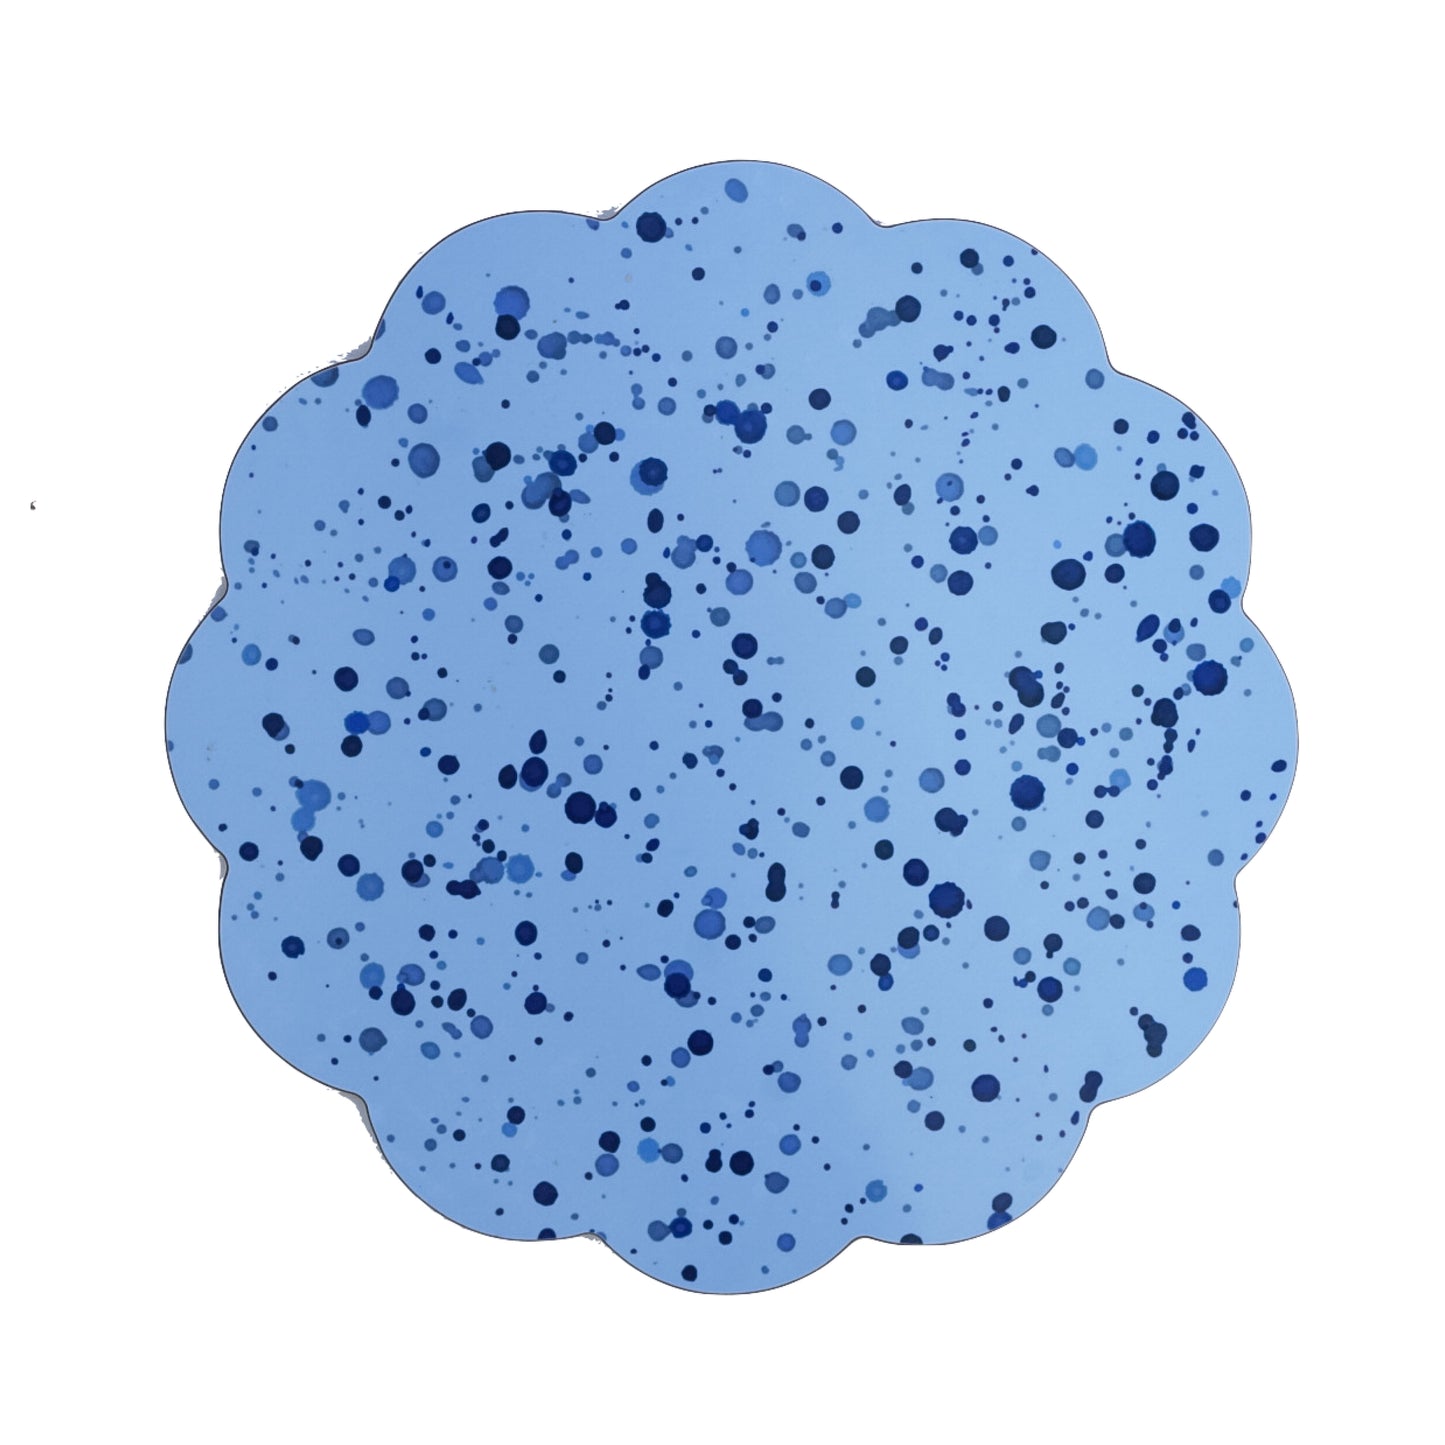 Blue Splatter Placemat